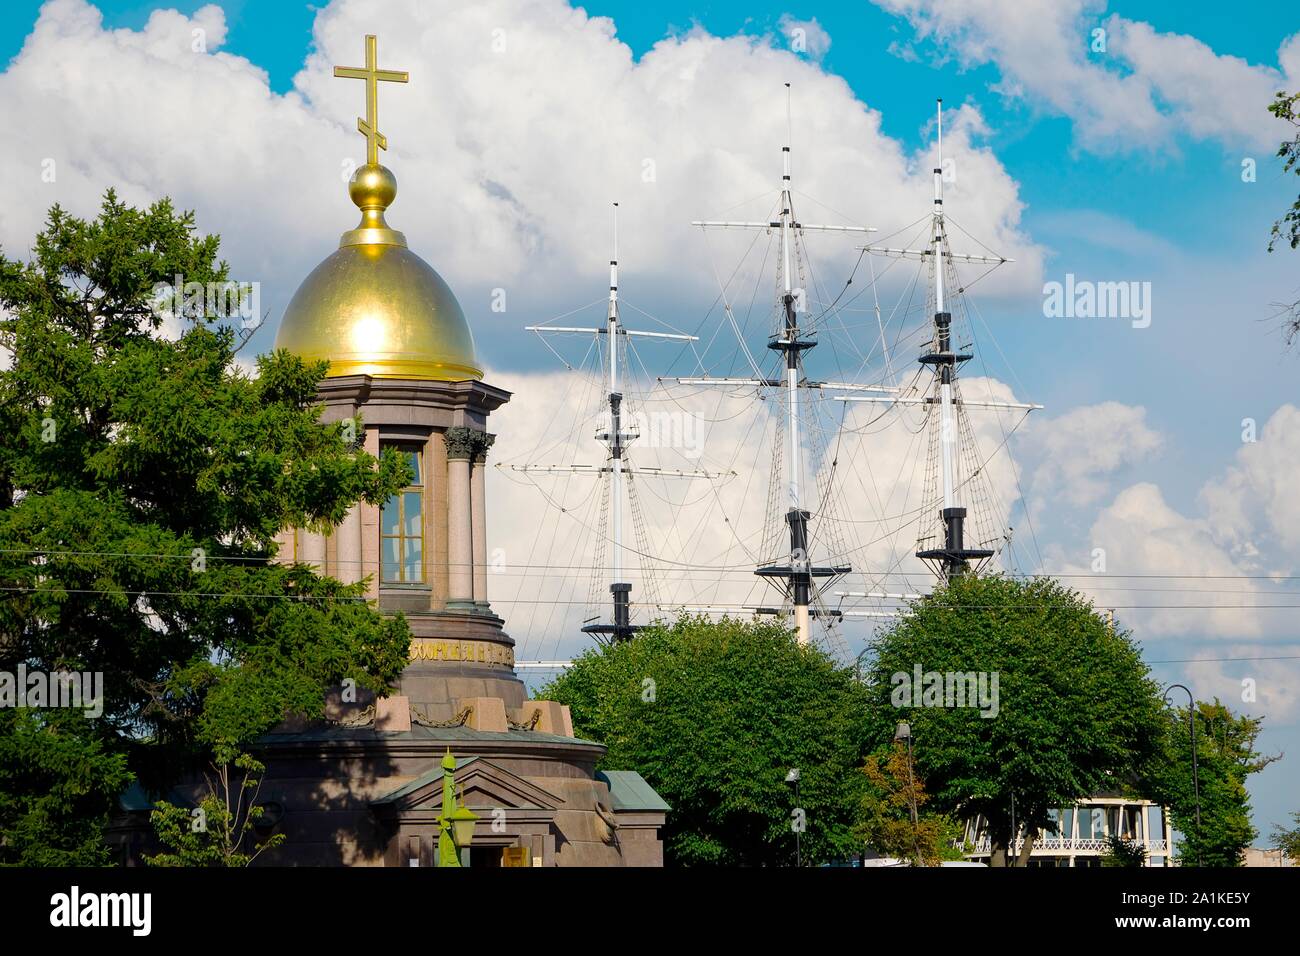 Saint-pétersbourg, Russie - le 7 juillet 2019 : tour de l'église d'or et de mâts de navire sur un ciel nuageux d'été Banque D'Images